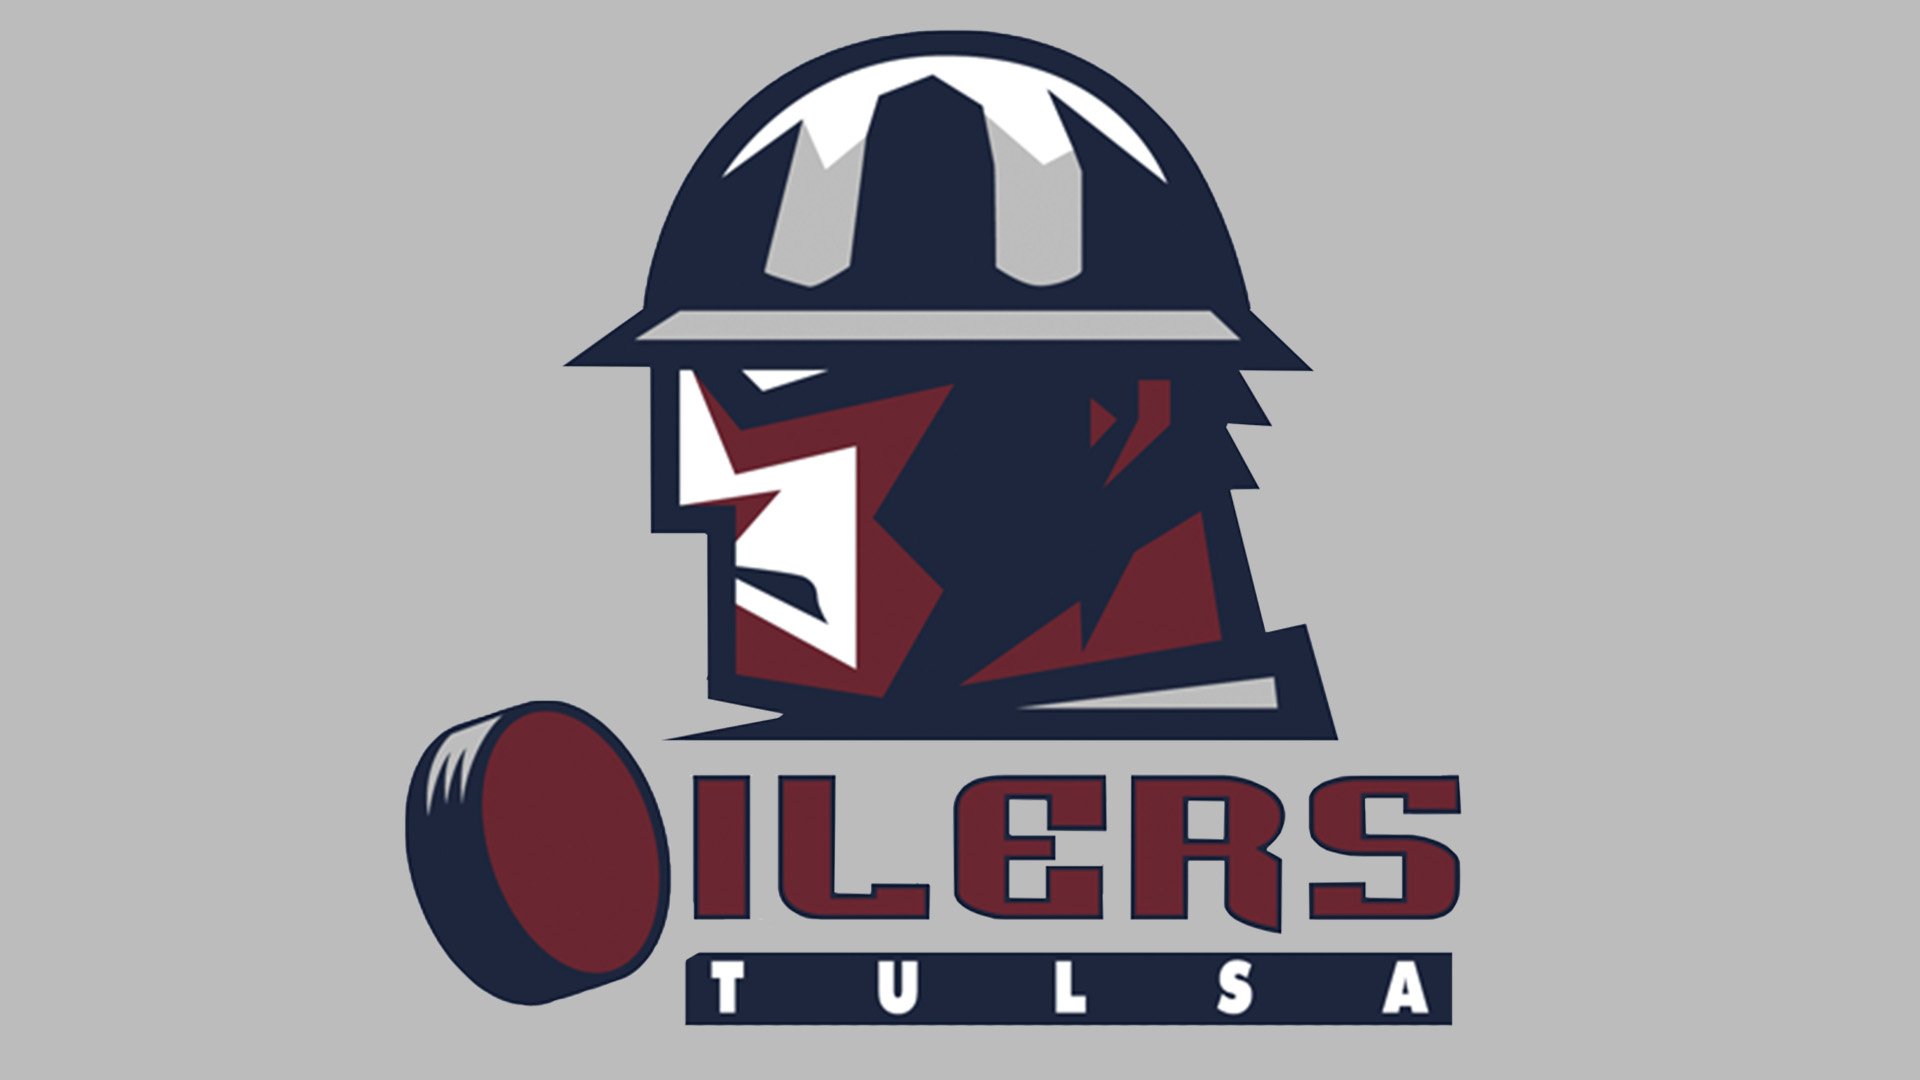 Tulsa Oilers, Tulsa, OK Professional Hockey